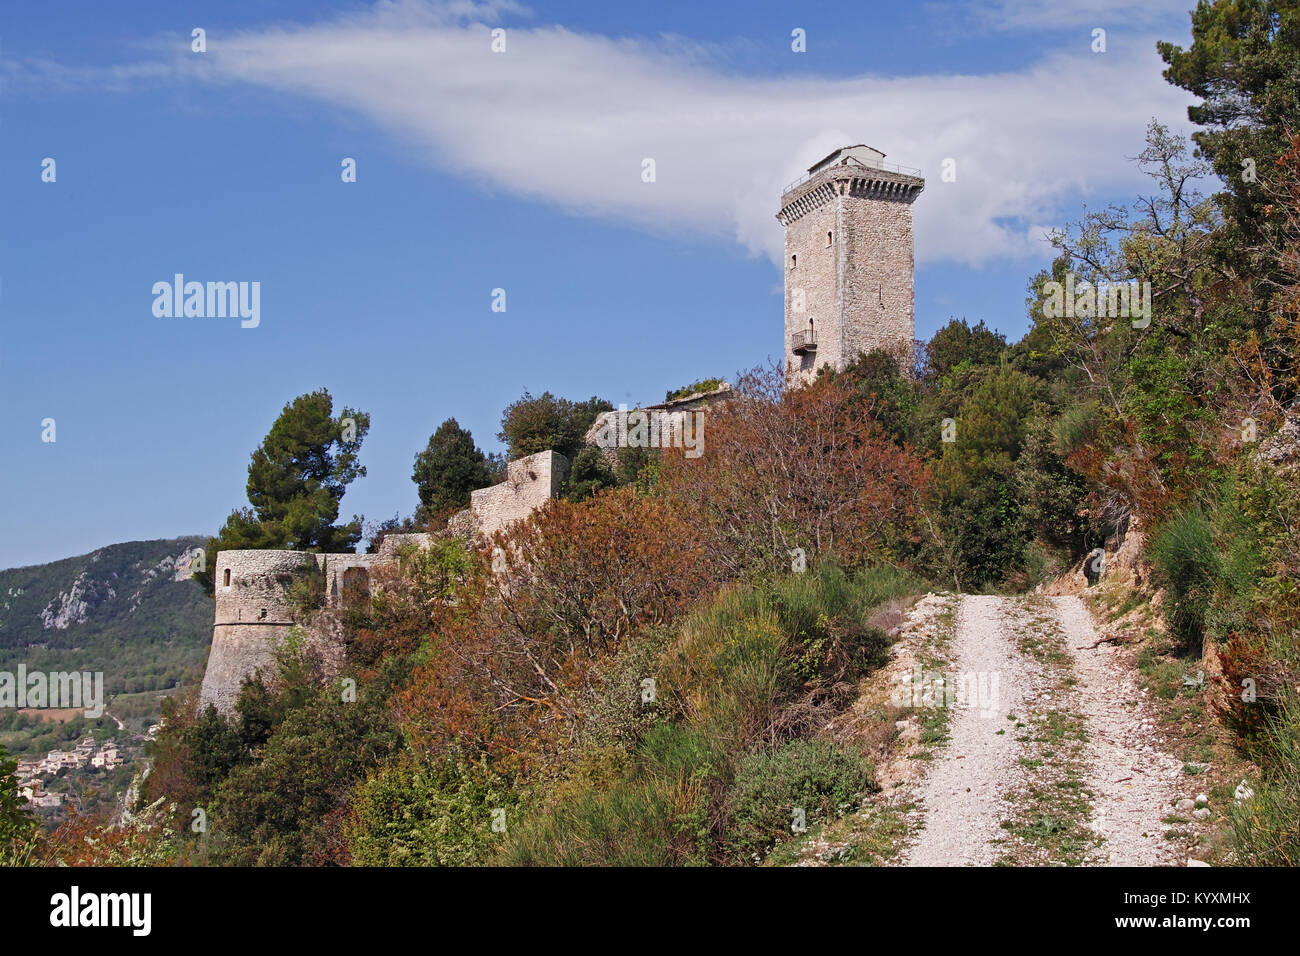 Le château médiéval de Ancaiano, Spoleto, Ombrie, Italie Banque D'Images